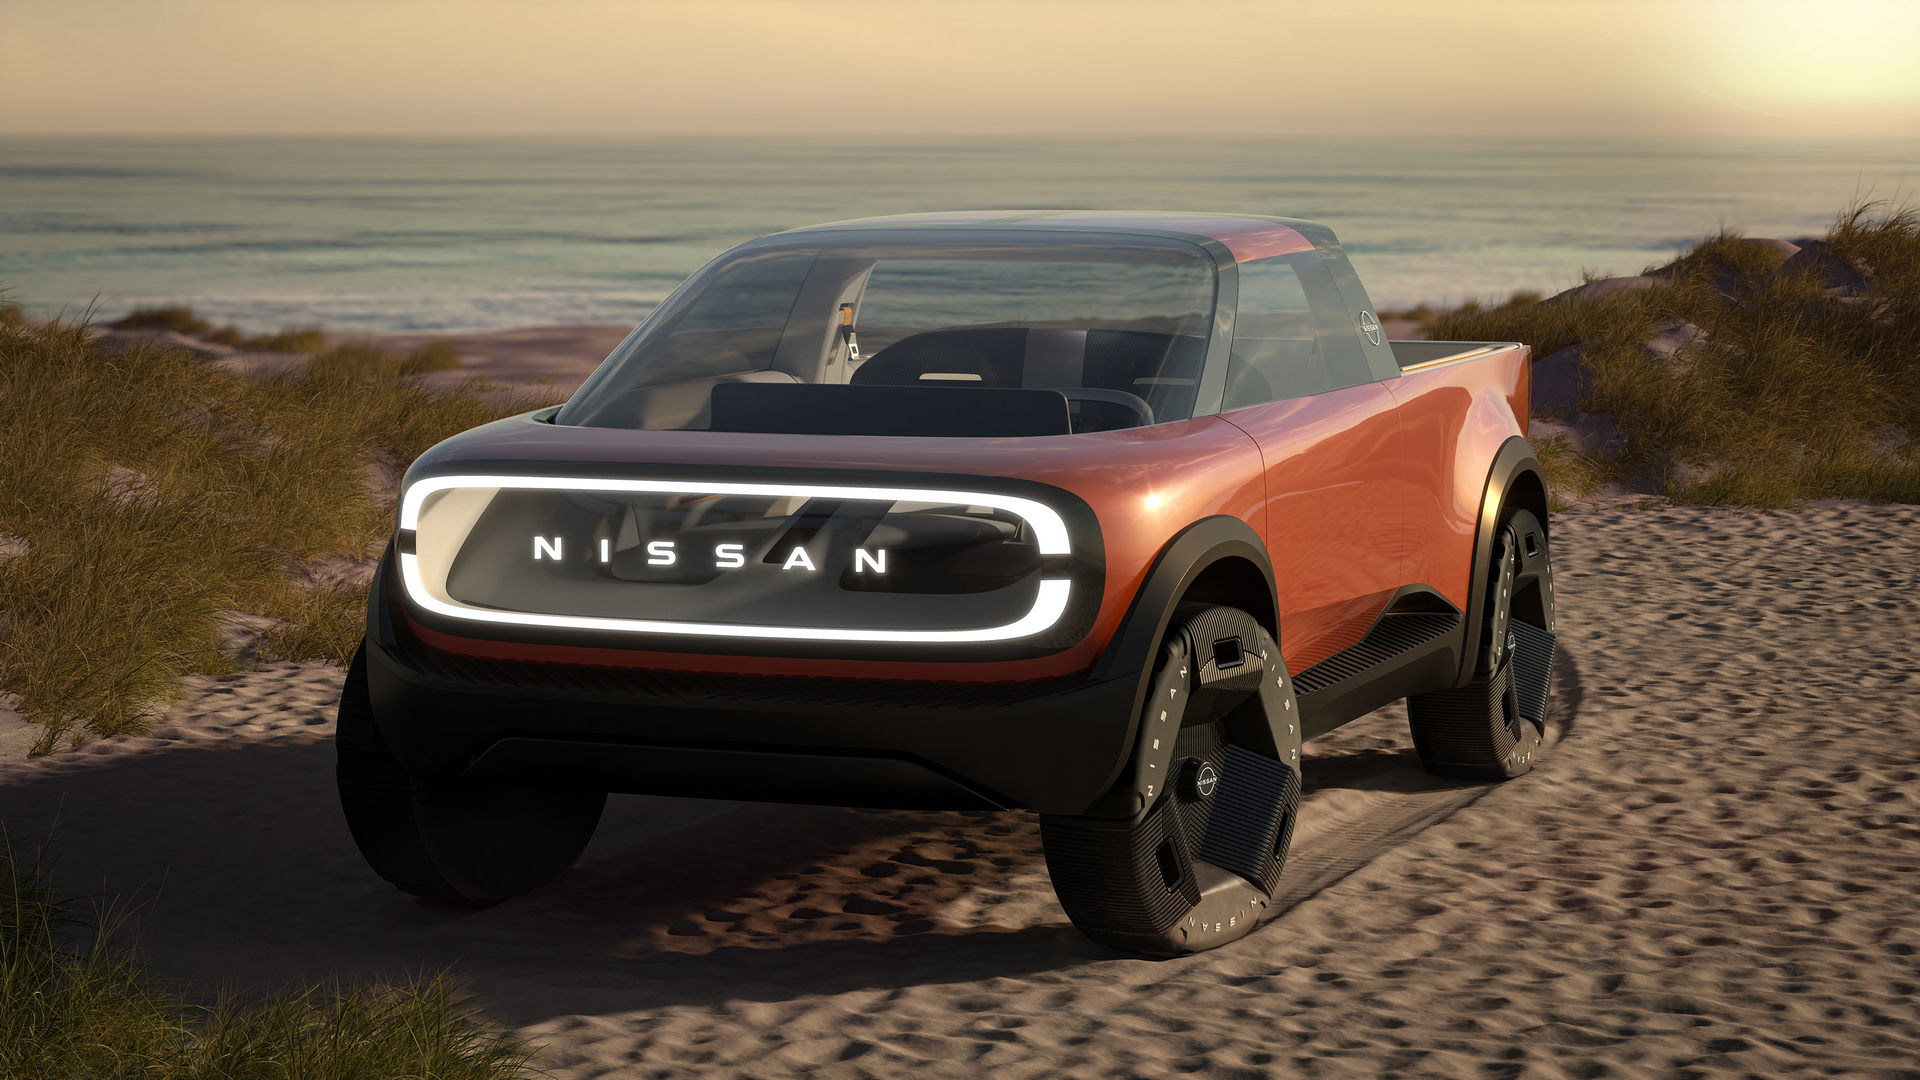 Nissan konsept modeller